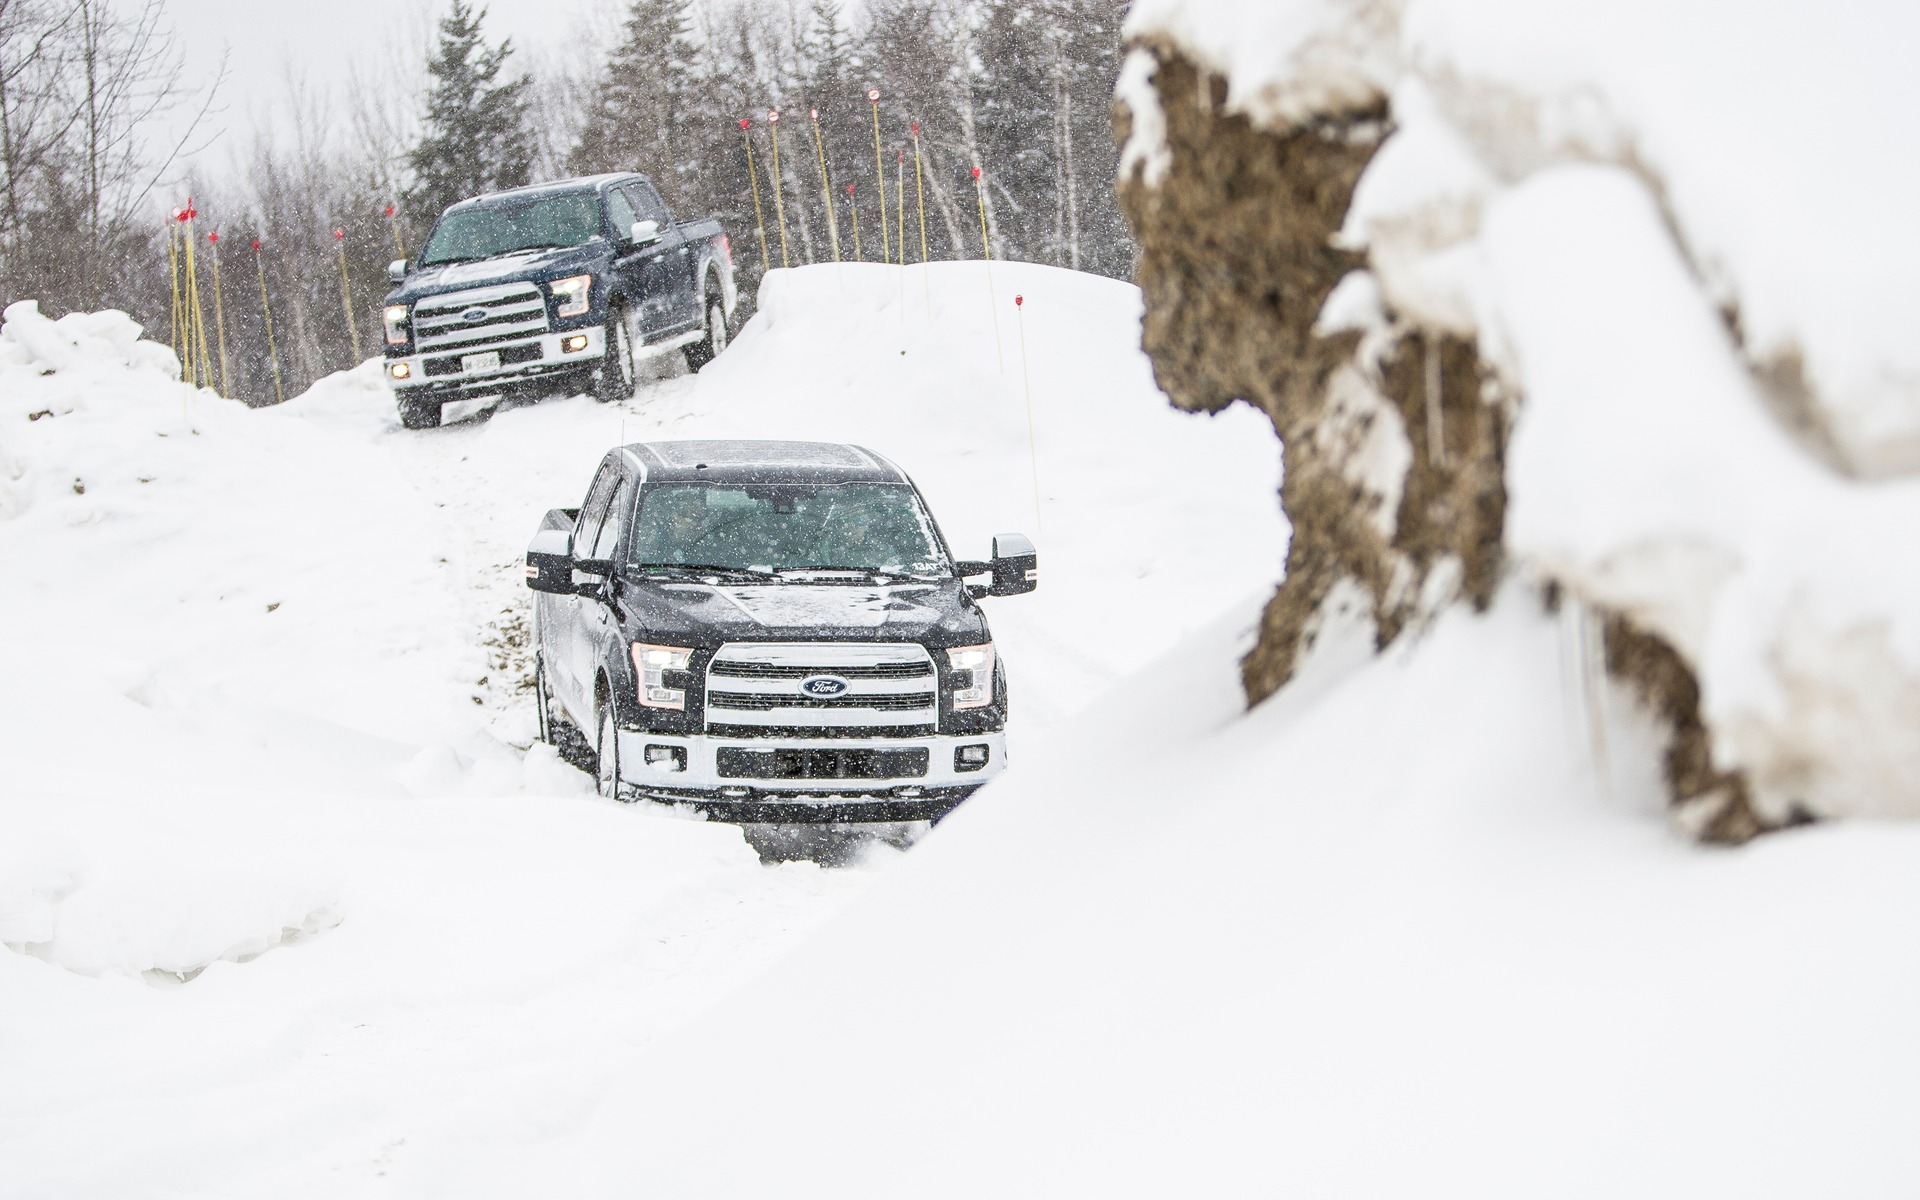 Ce n'est pas quelques centimètres de neige qui arrêteront un camion!